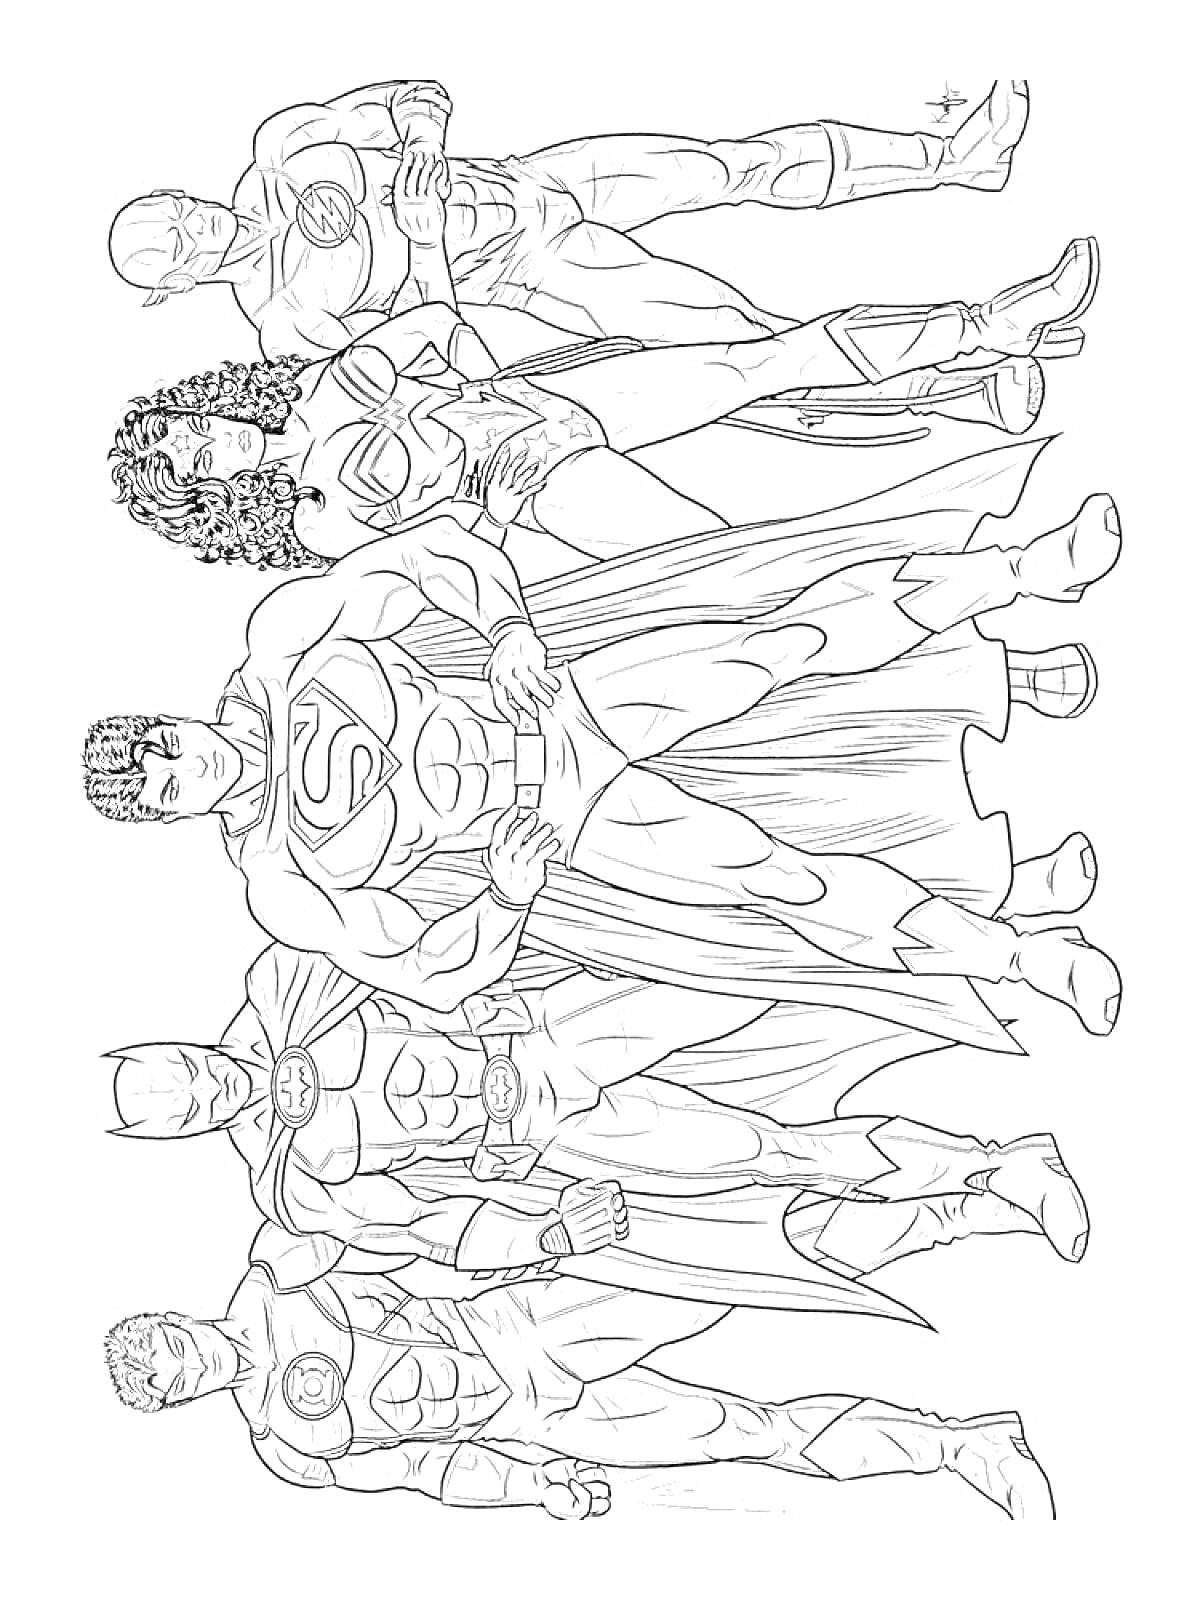 Раскраска Группа супергероев в стоячем положении, один с плащом, остальные четверо без плаща, в костюмах с логотипами на груди, женский персонаж с развевающимися волосами и короткой юбкой